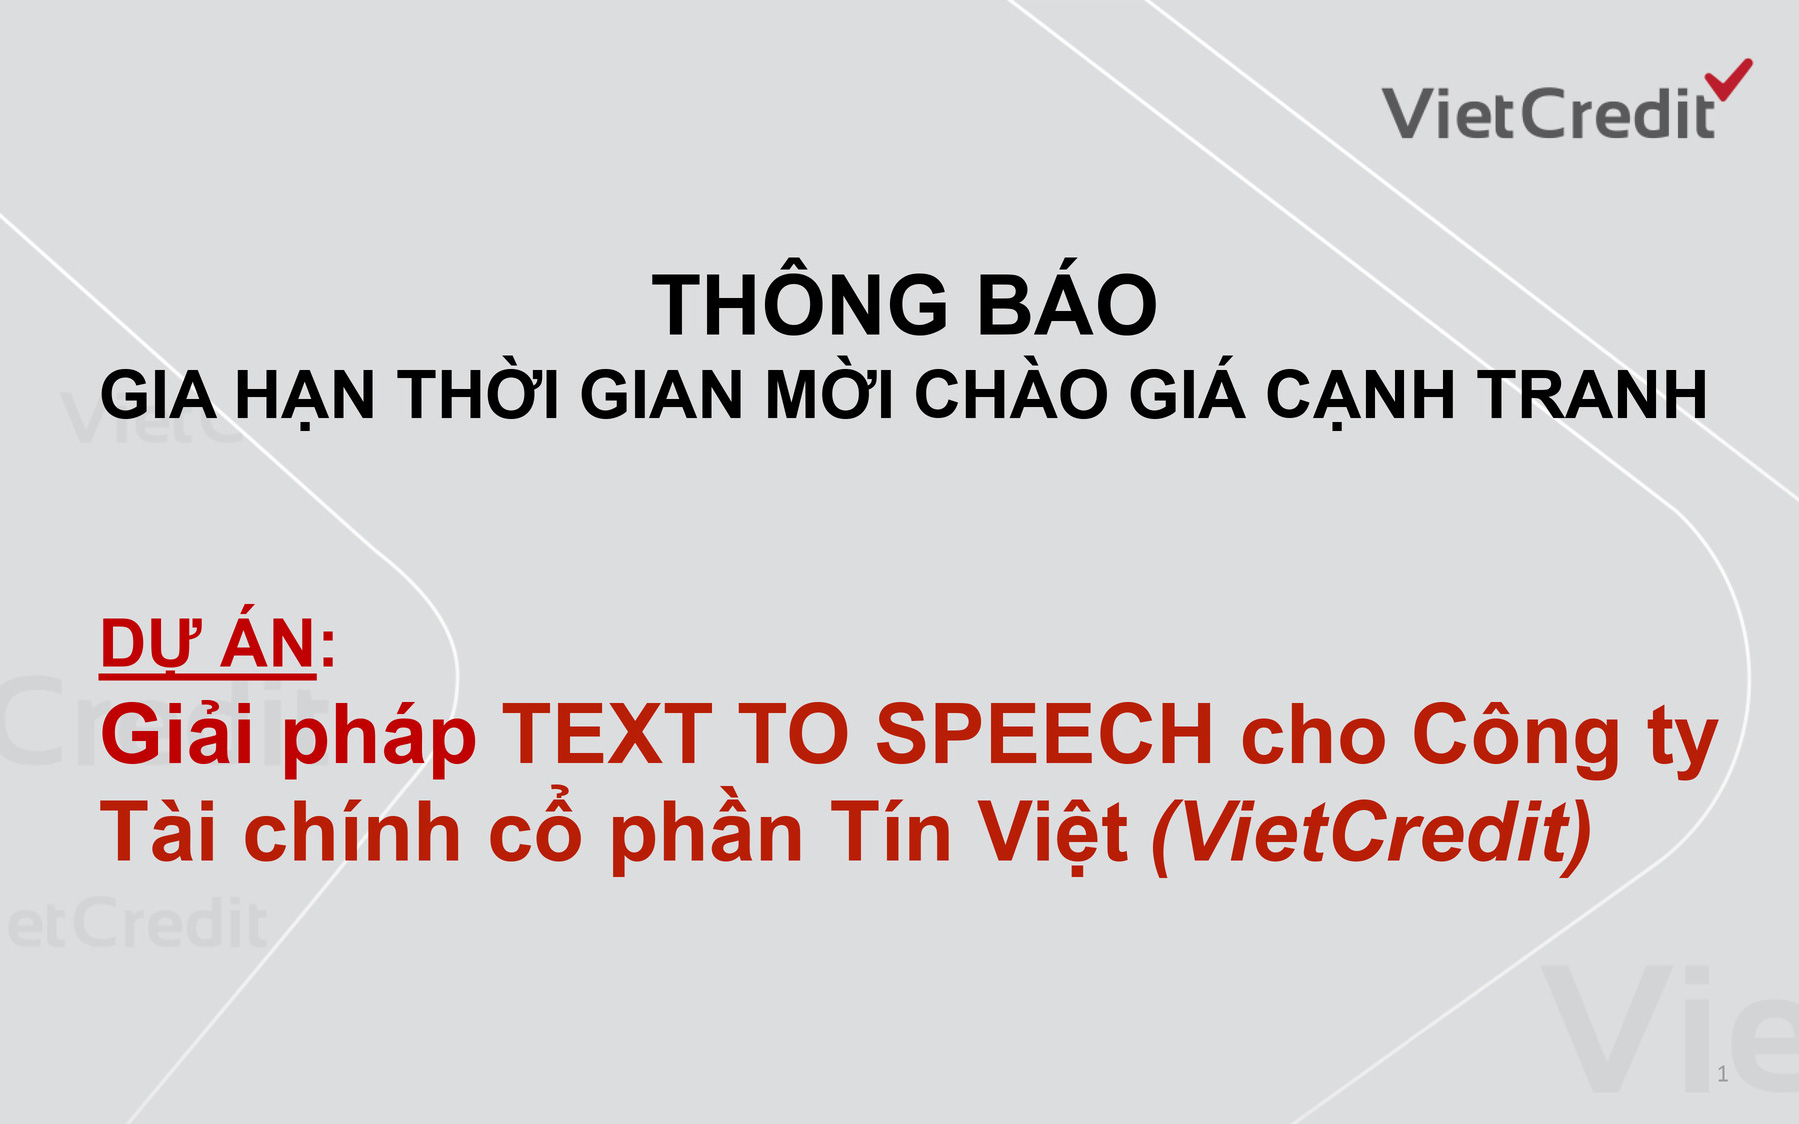 VietCredit thông báo gia hạn thời gian mời chào giá cạnh tranh dự án giải pháp Text To Speech